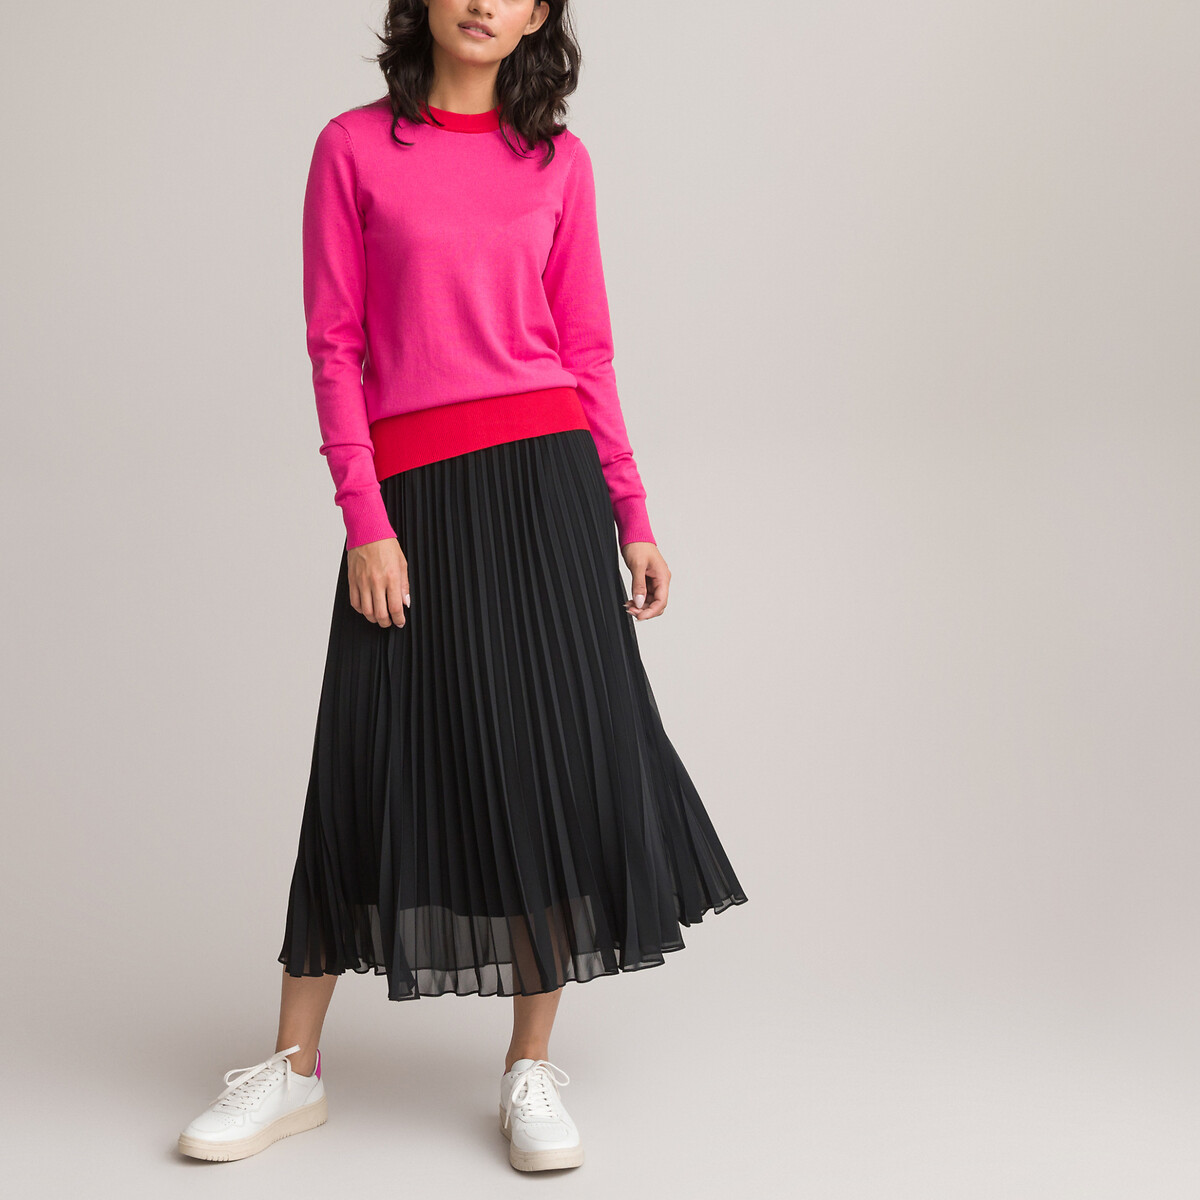 Пуловер LA REDOUTE COLLECTIONS Пуловер Двухцветный с круглым вырезом из тонкого трикотажа M розовый, размер M - фото 2